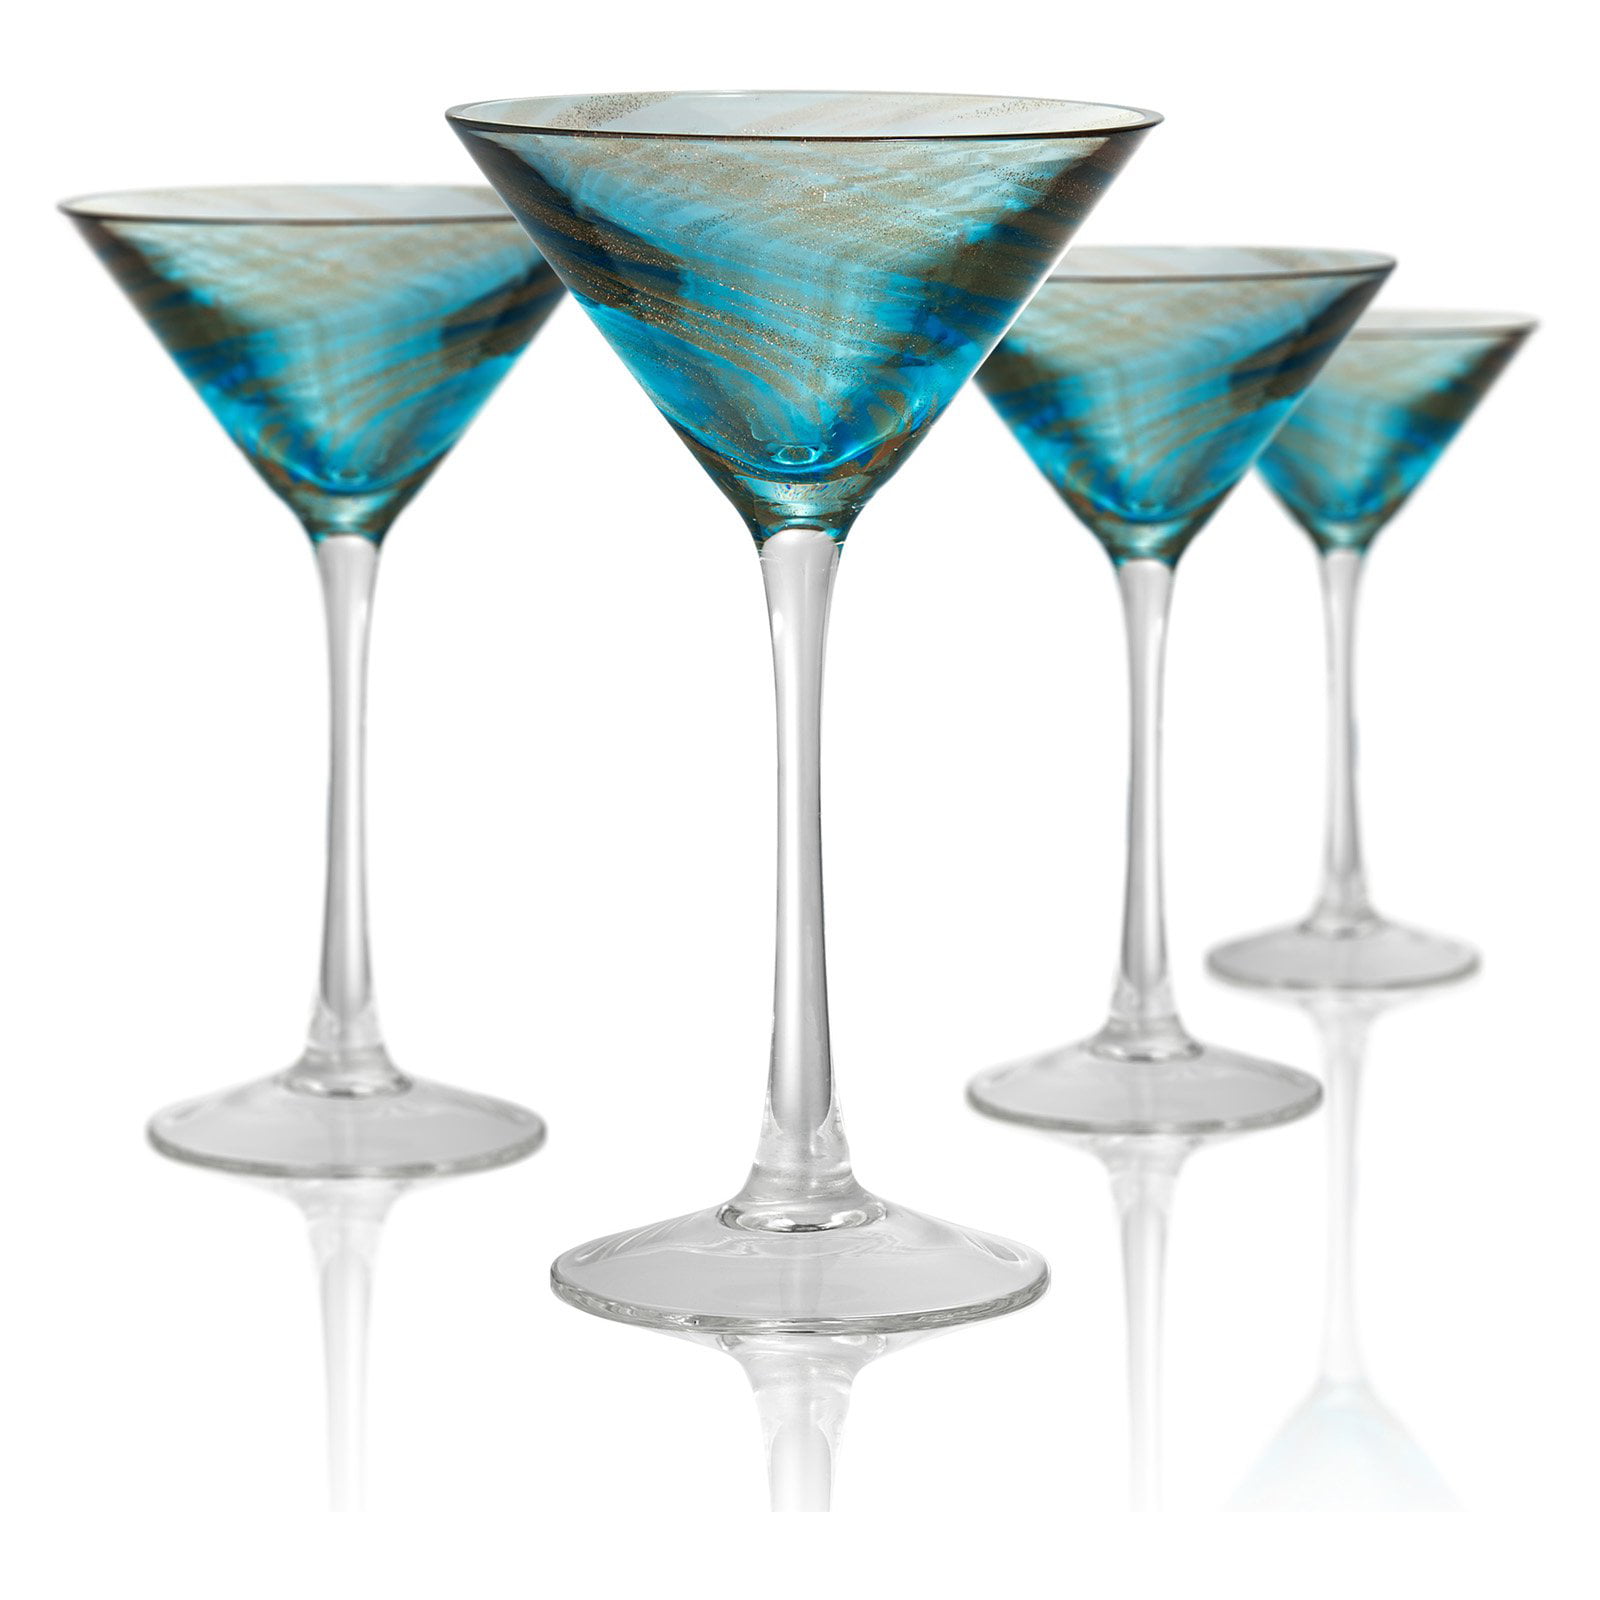 Artland 52013B Coppertino Martini Glass Set Of 4 10 oz Clear//Copper